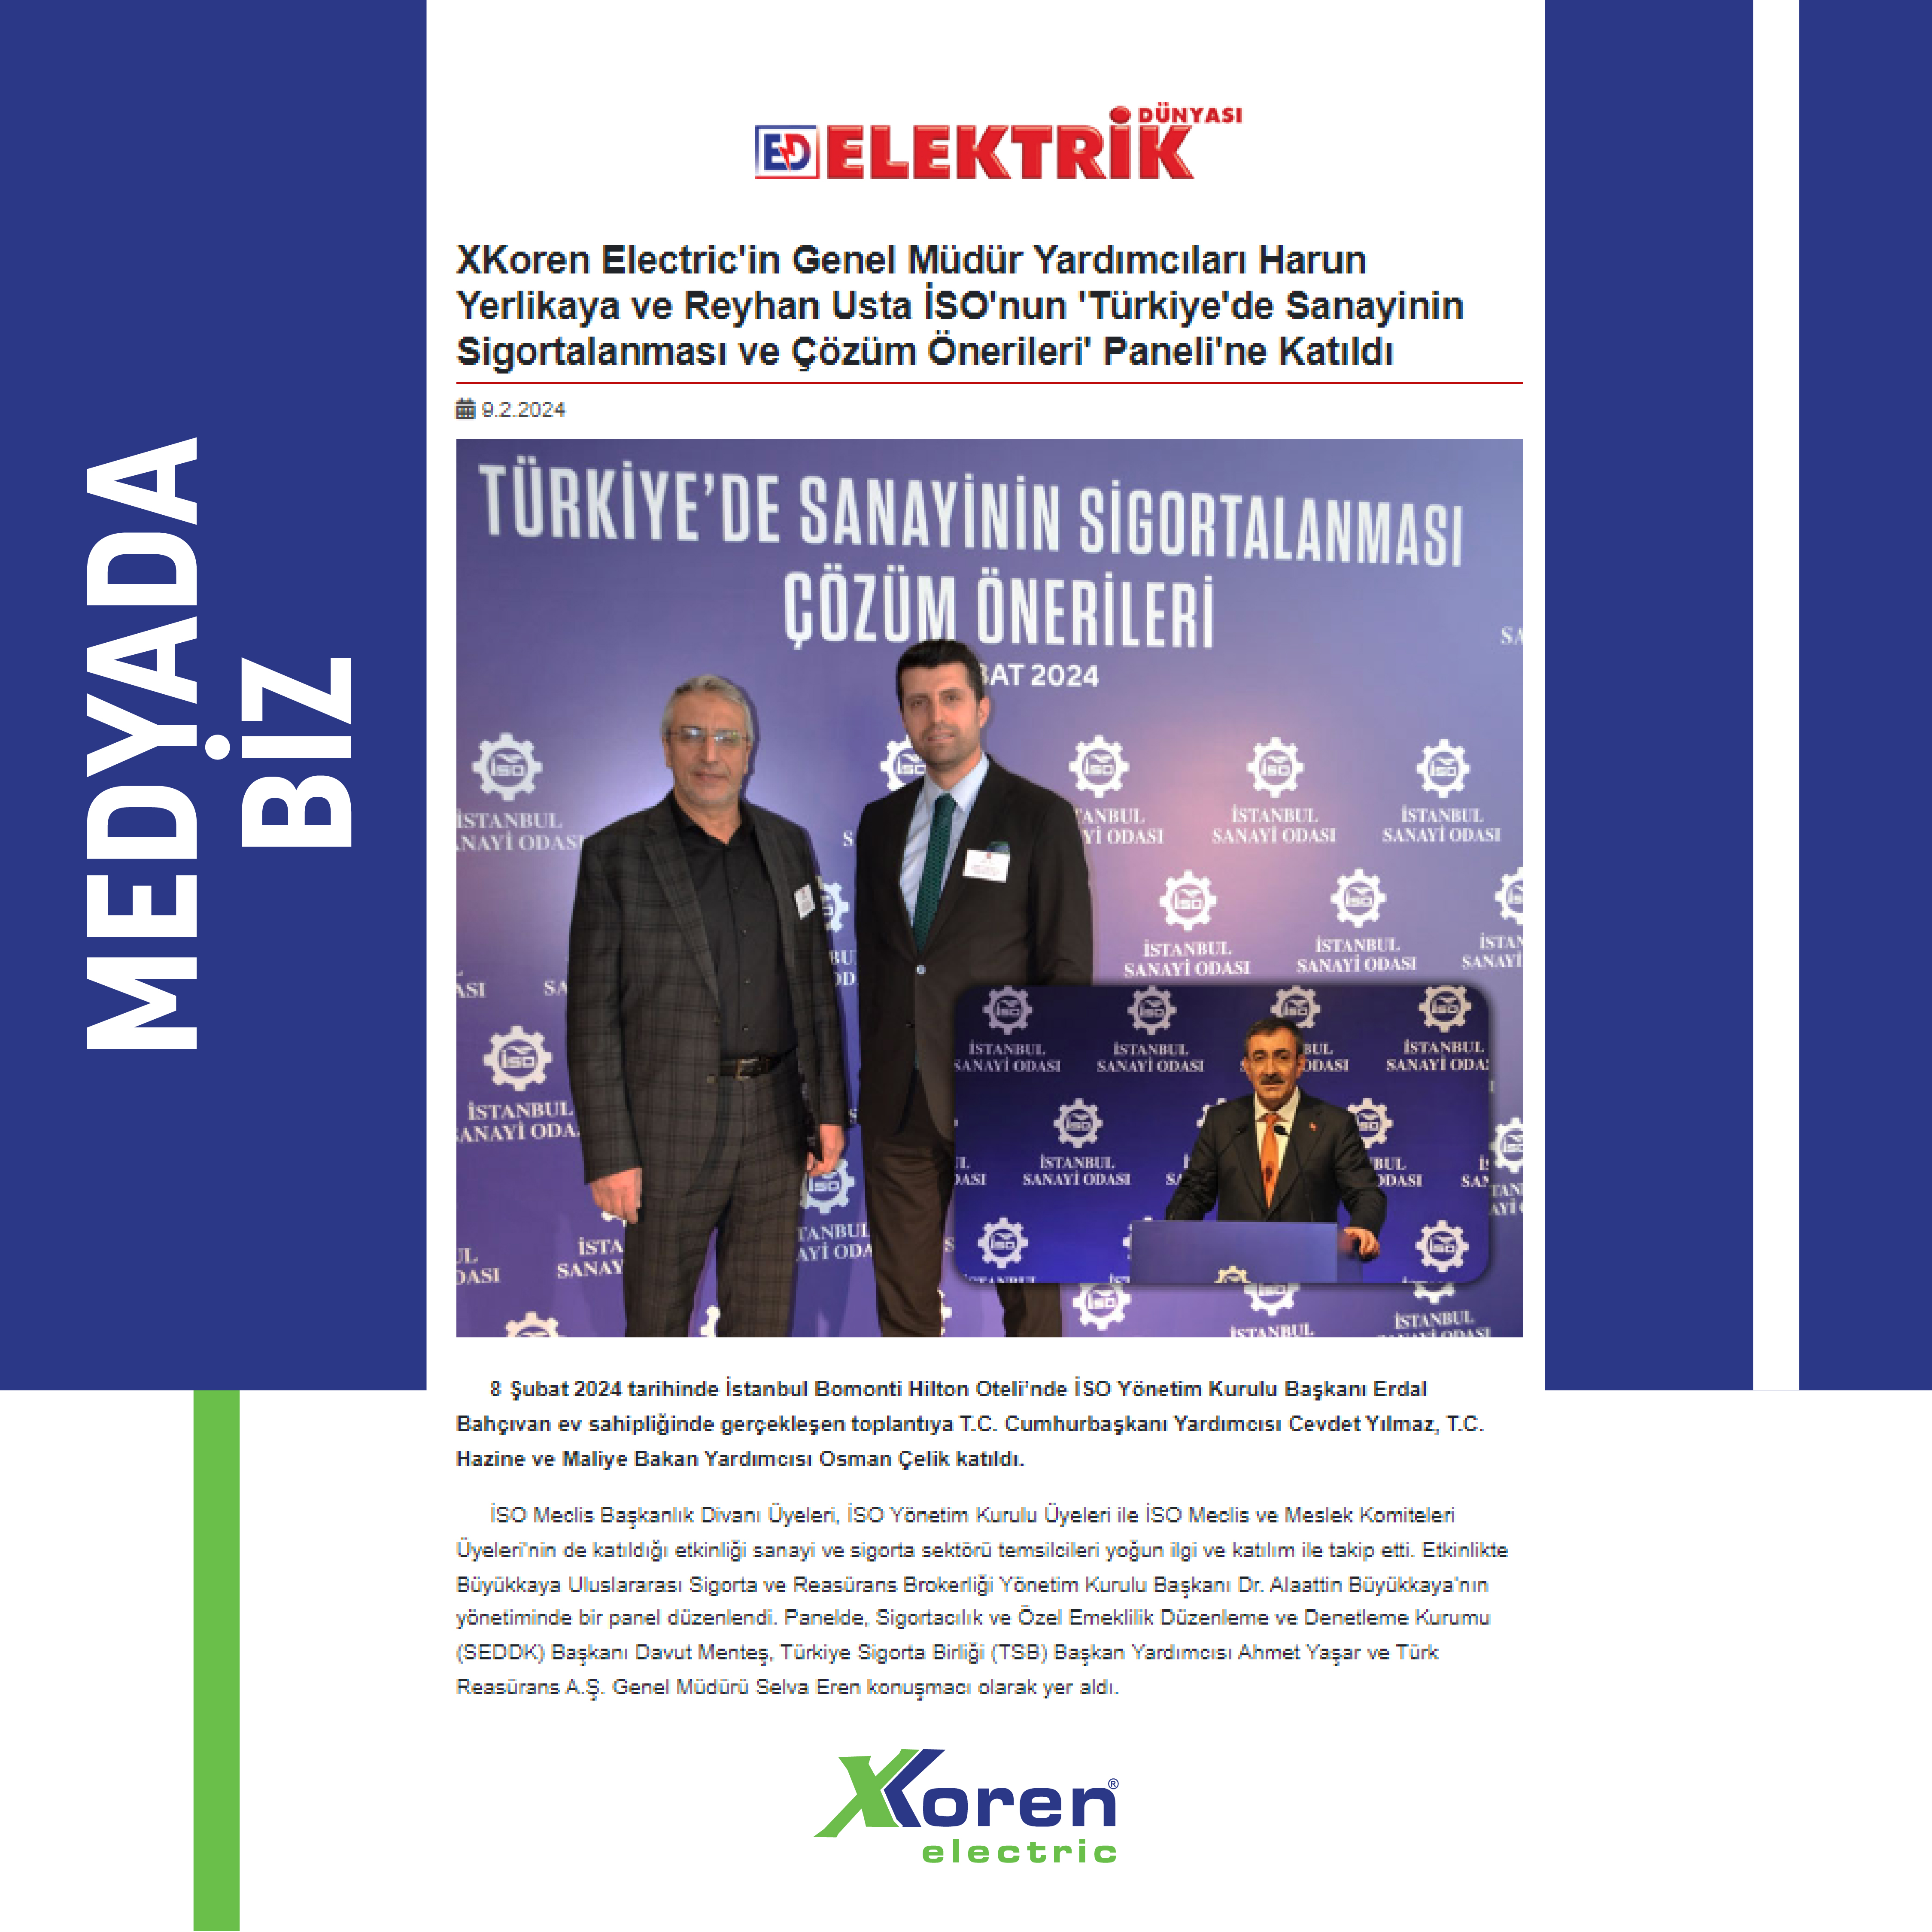 X Koren Electric'in Genel Müdür Yardımcıları Harun Yerlikaya ve Reyhan Usta İSO'nun 'Türkiye'de Sanayinin Sigortalanması ve Çözüm Önerileri' Paneli'ne Katıldı